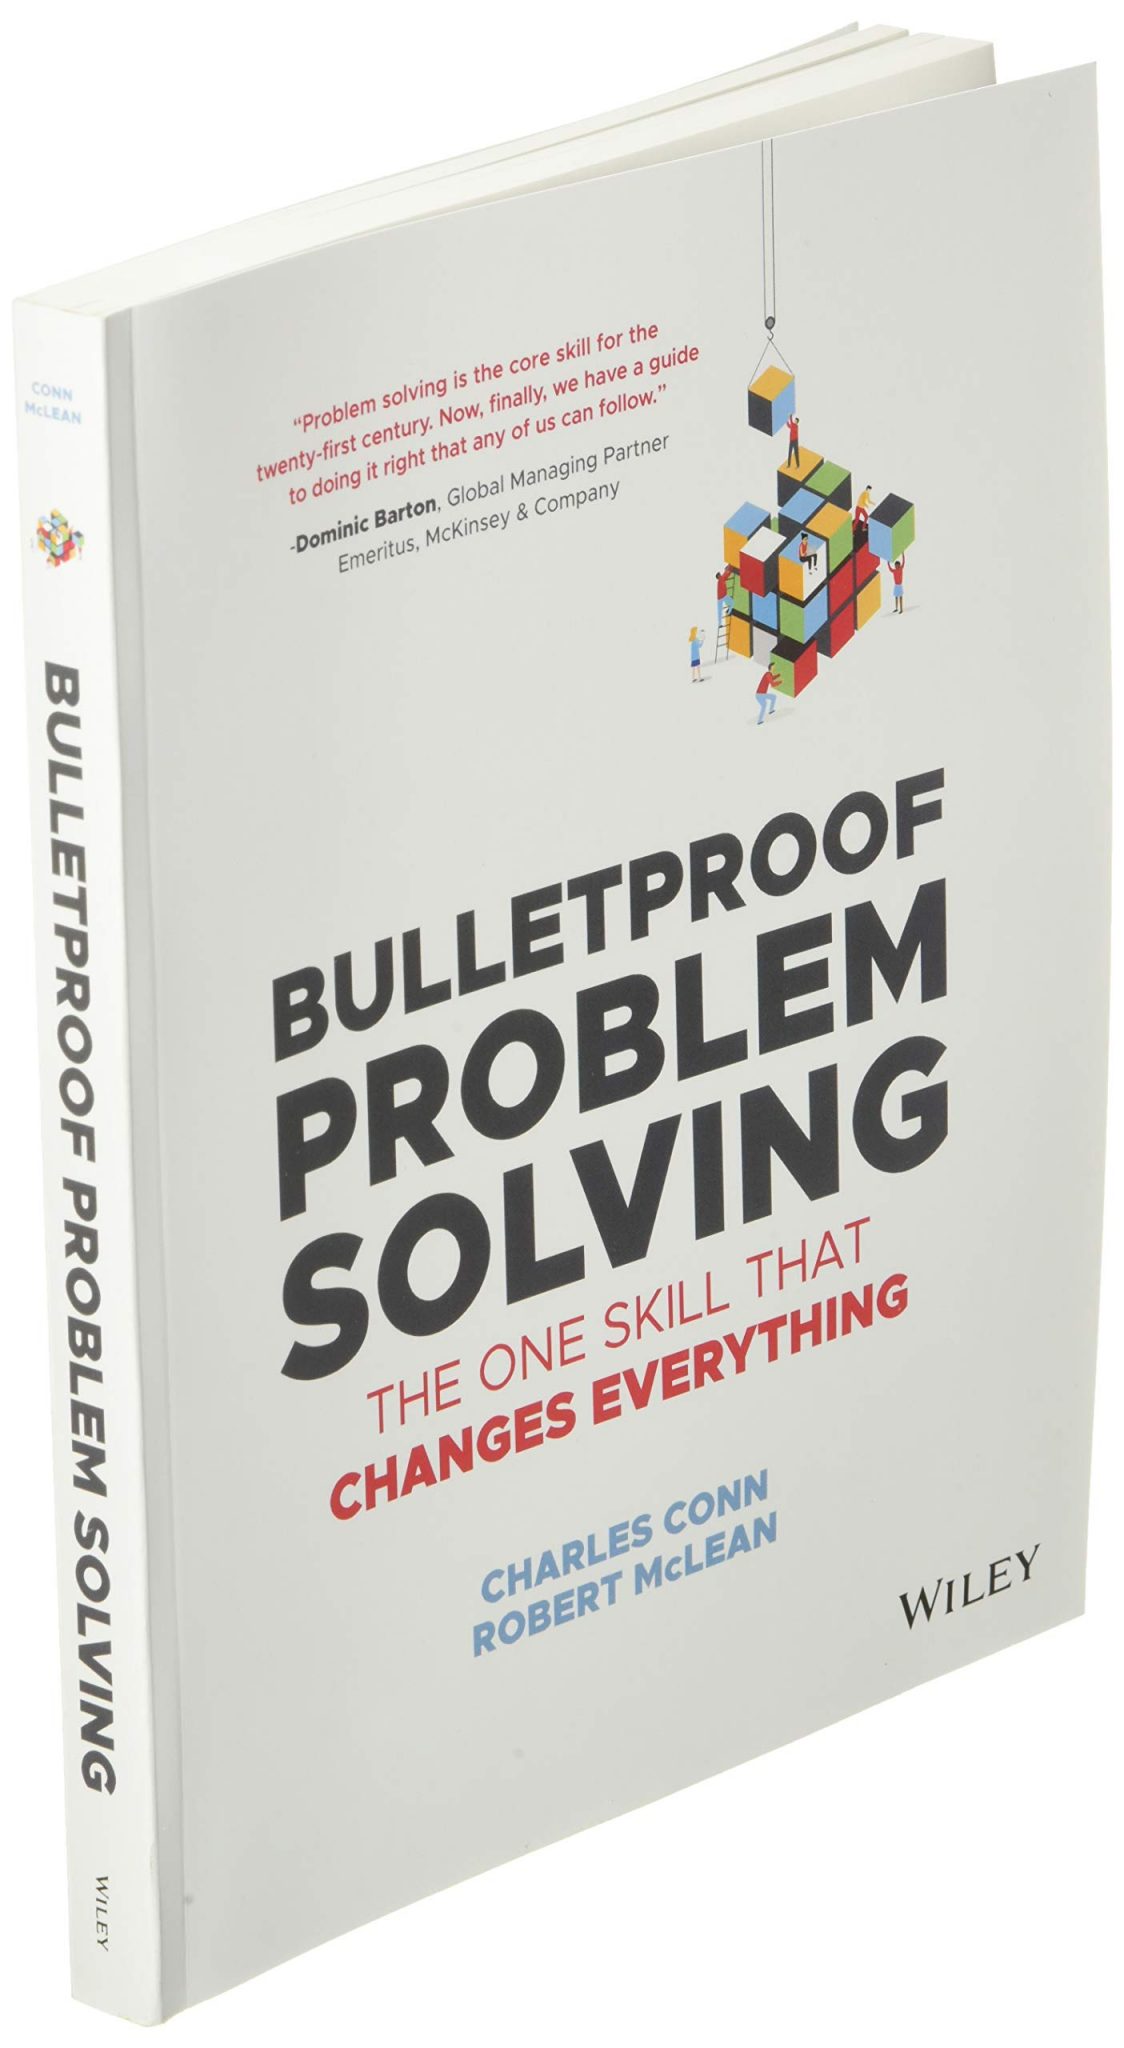 bulletproof problem solving framework